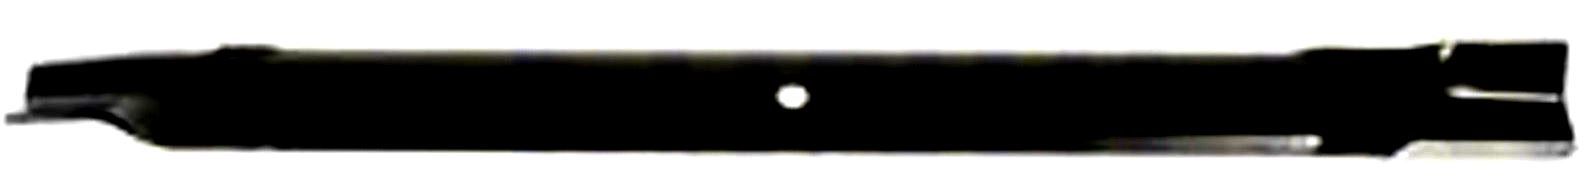 Žací nůž,délka 797mm (TORO -32","High Lift")